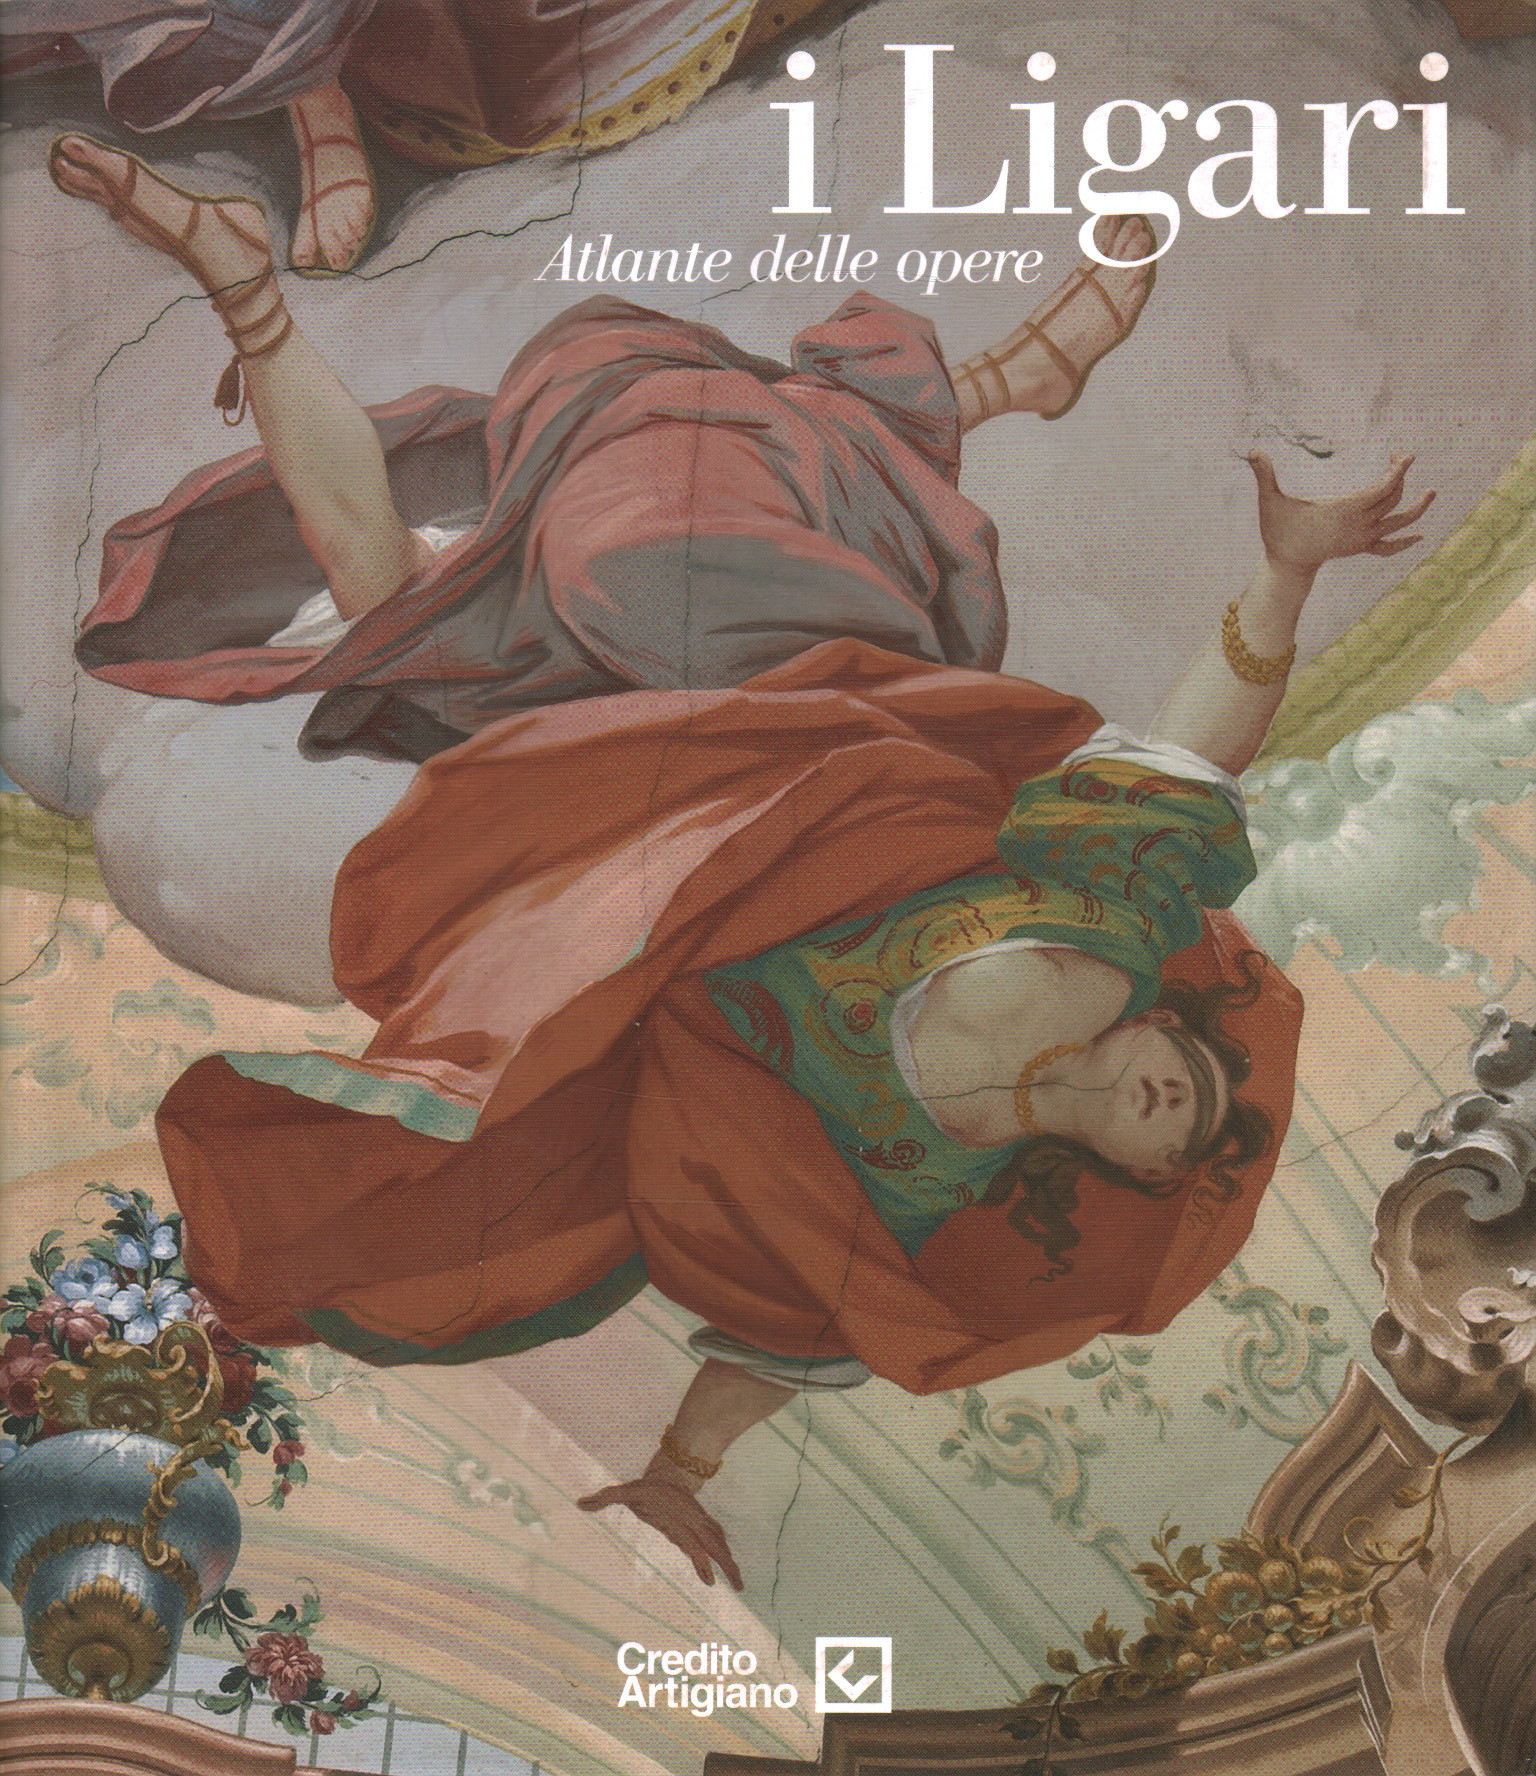 Der Ligari. Atlas der Werke, Paolo Vanoli